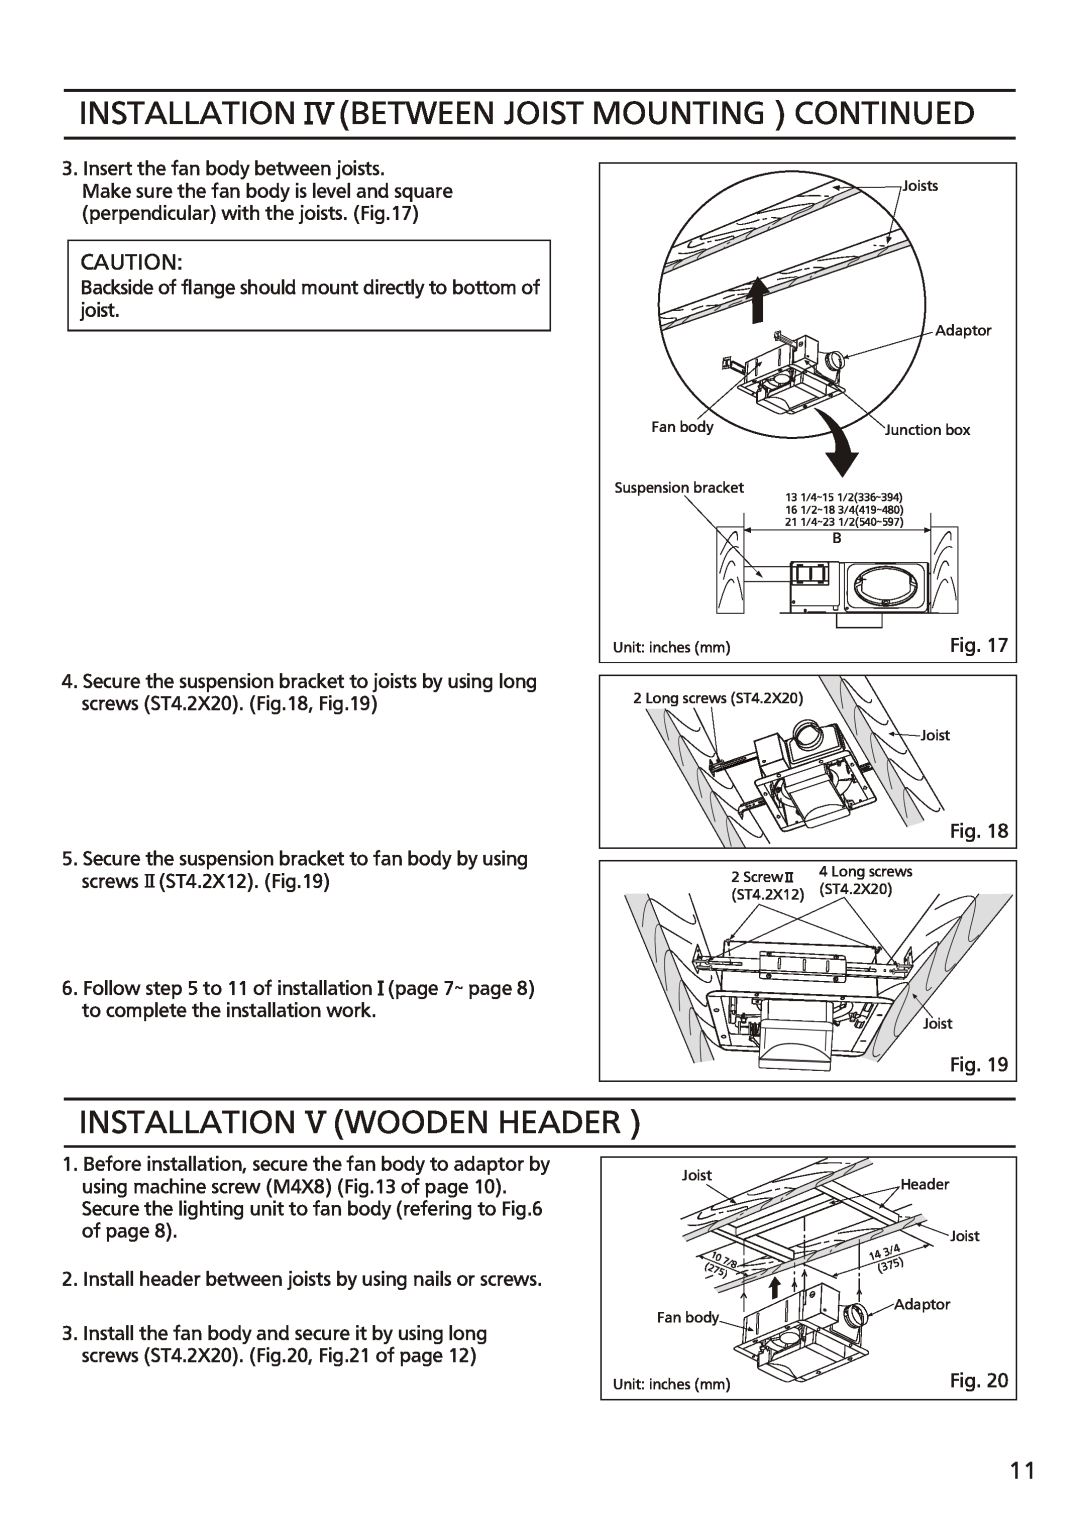 Panasonic FV-08vsl2 installation instructions Installation Between Joist Mounting Continued, Installation Wooden Header 